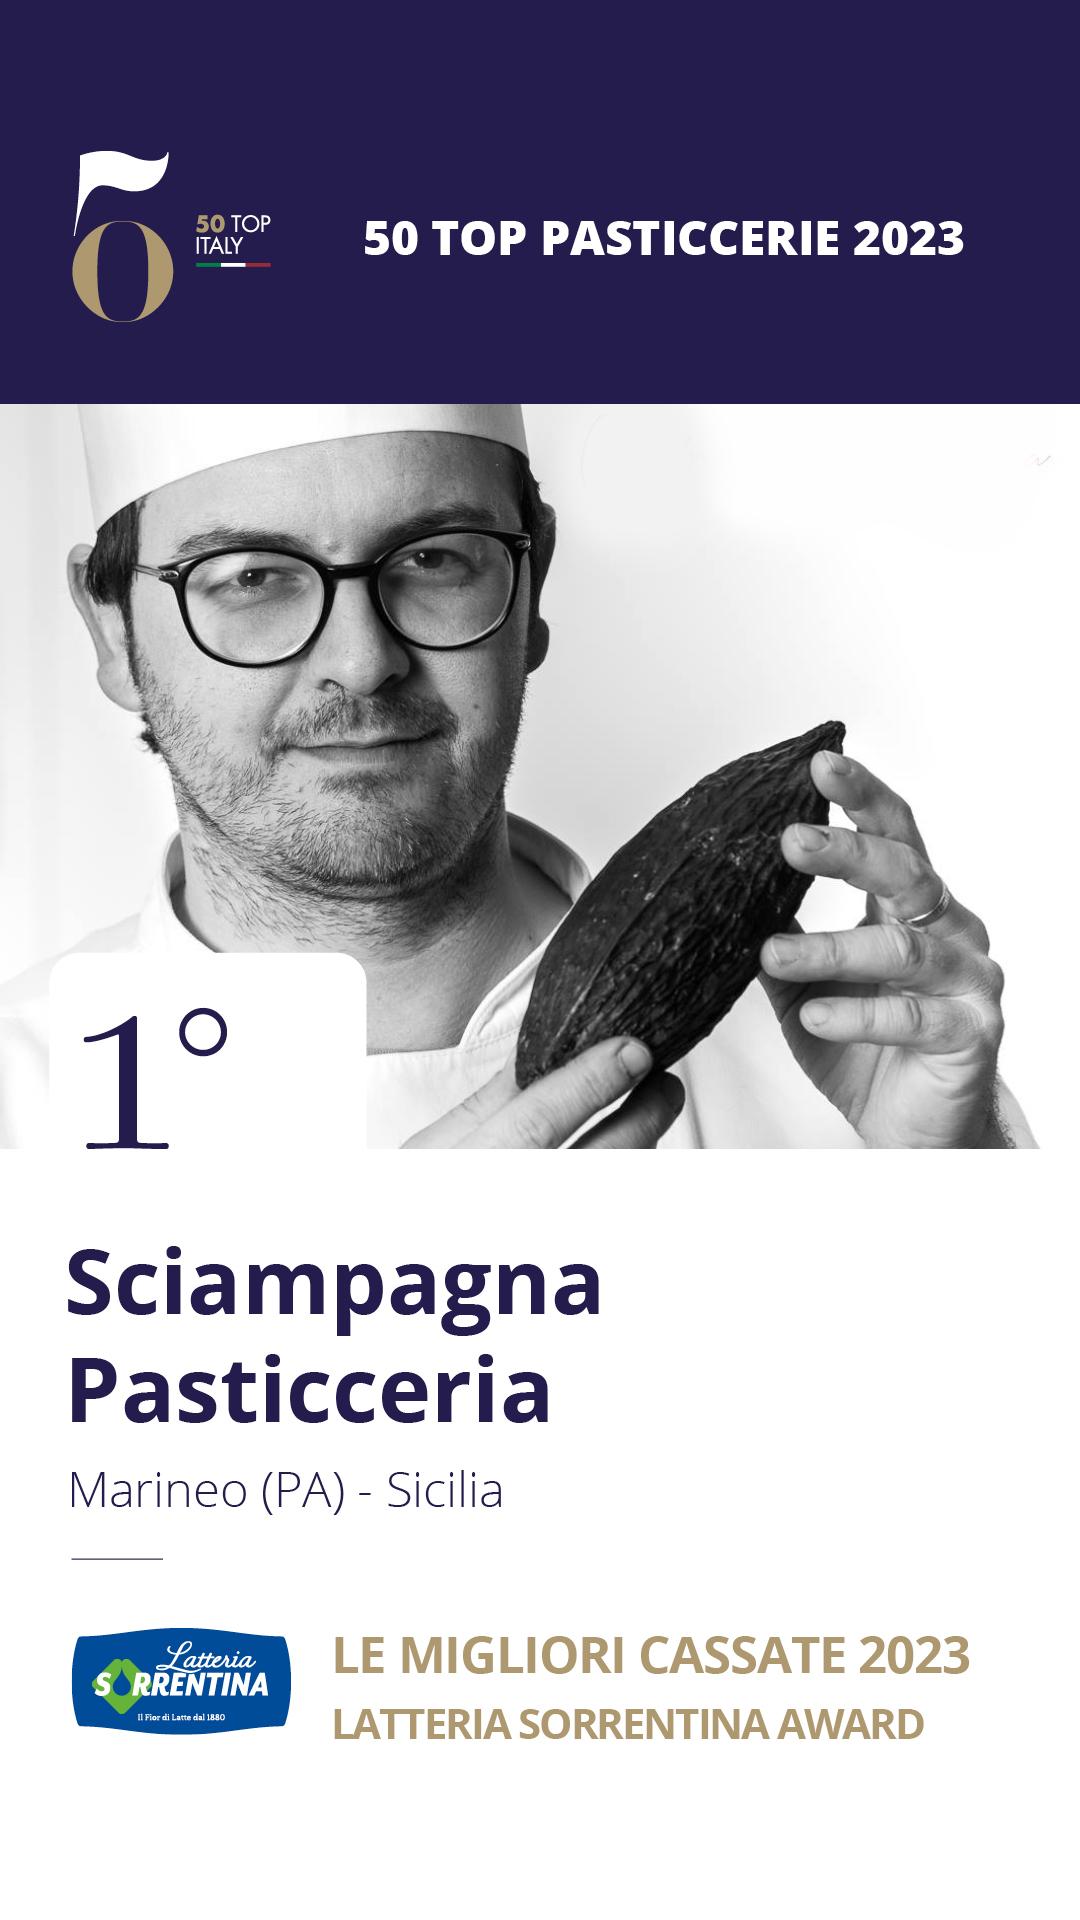 1 - Sciampagna Pasticceria - Marineo (PA), Sicilia